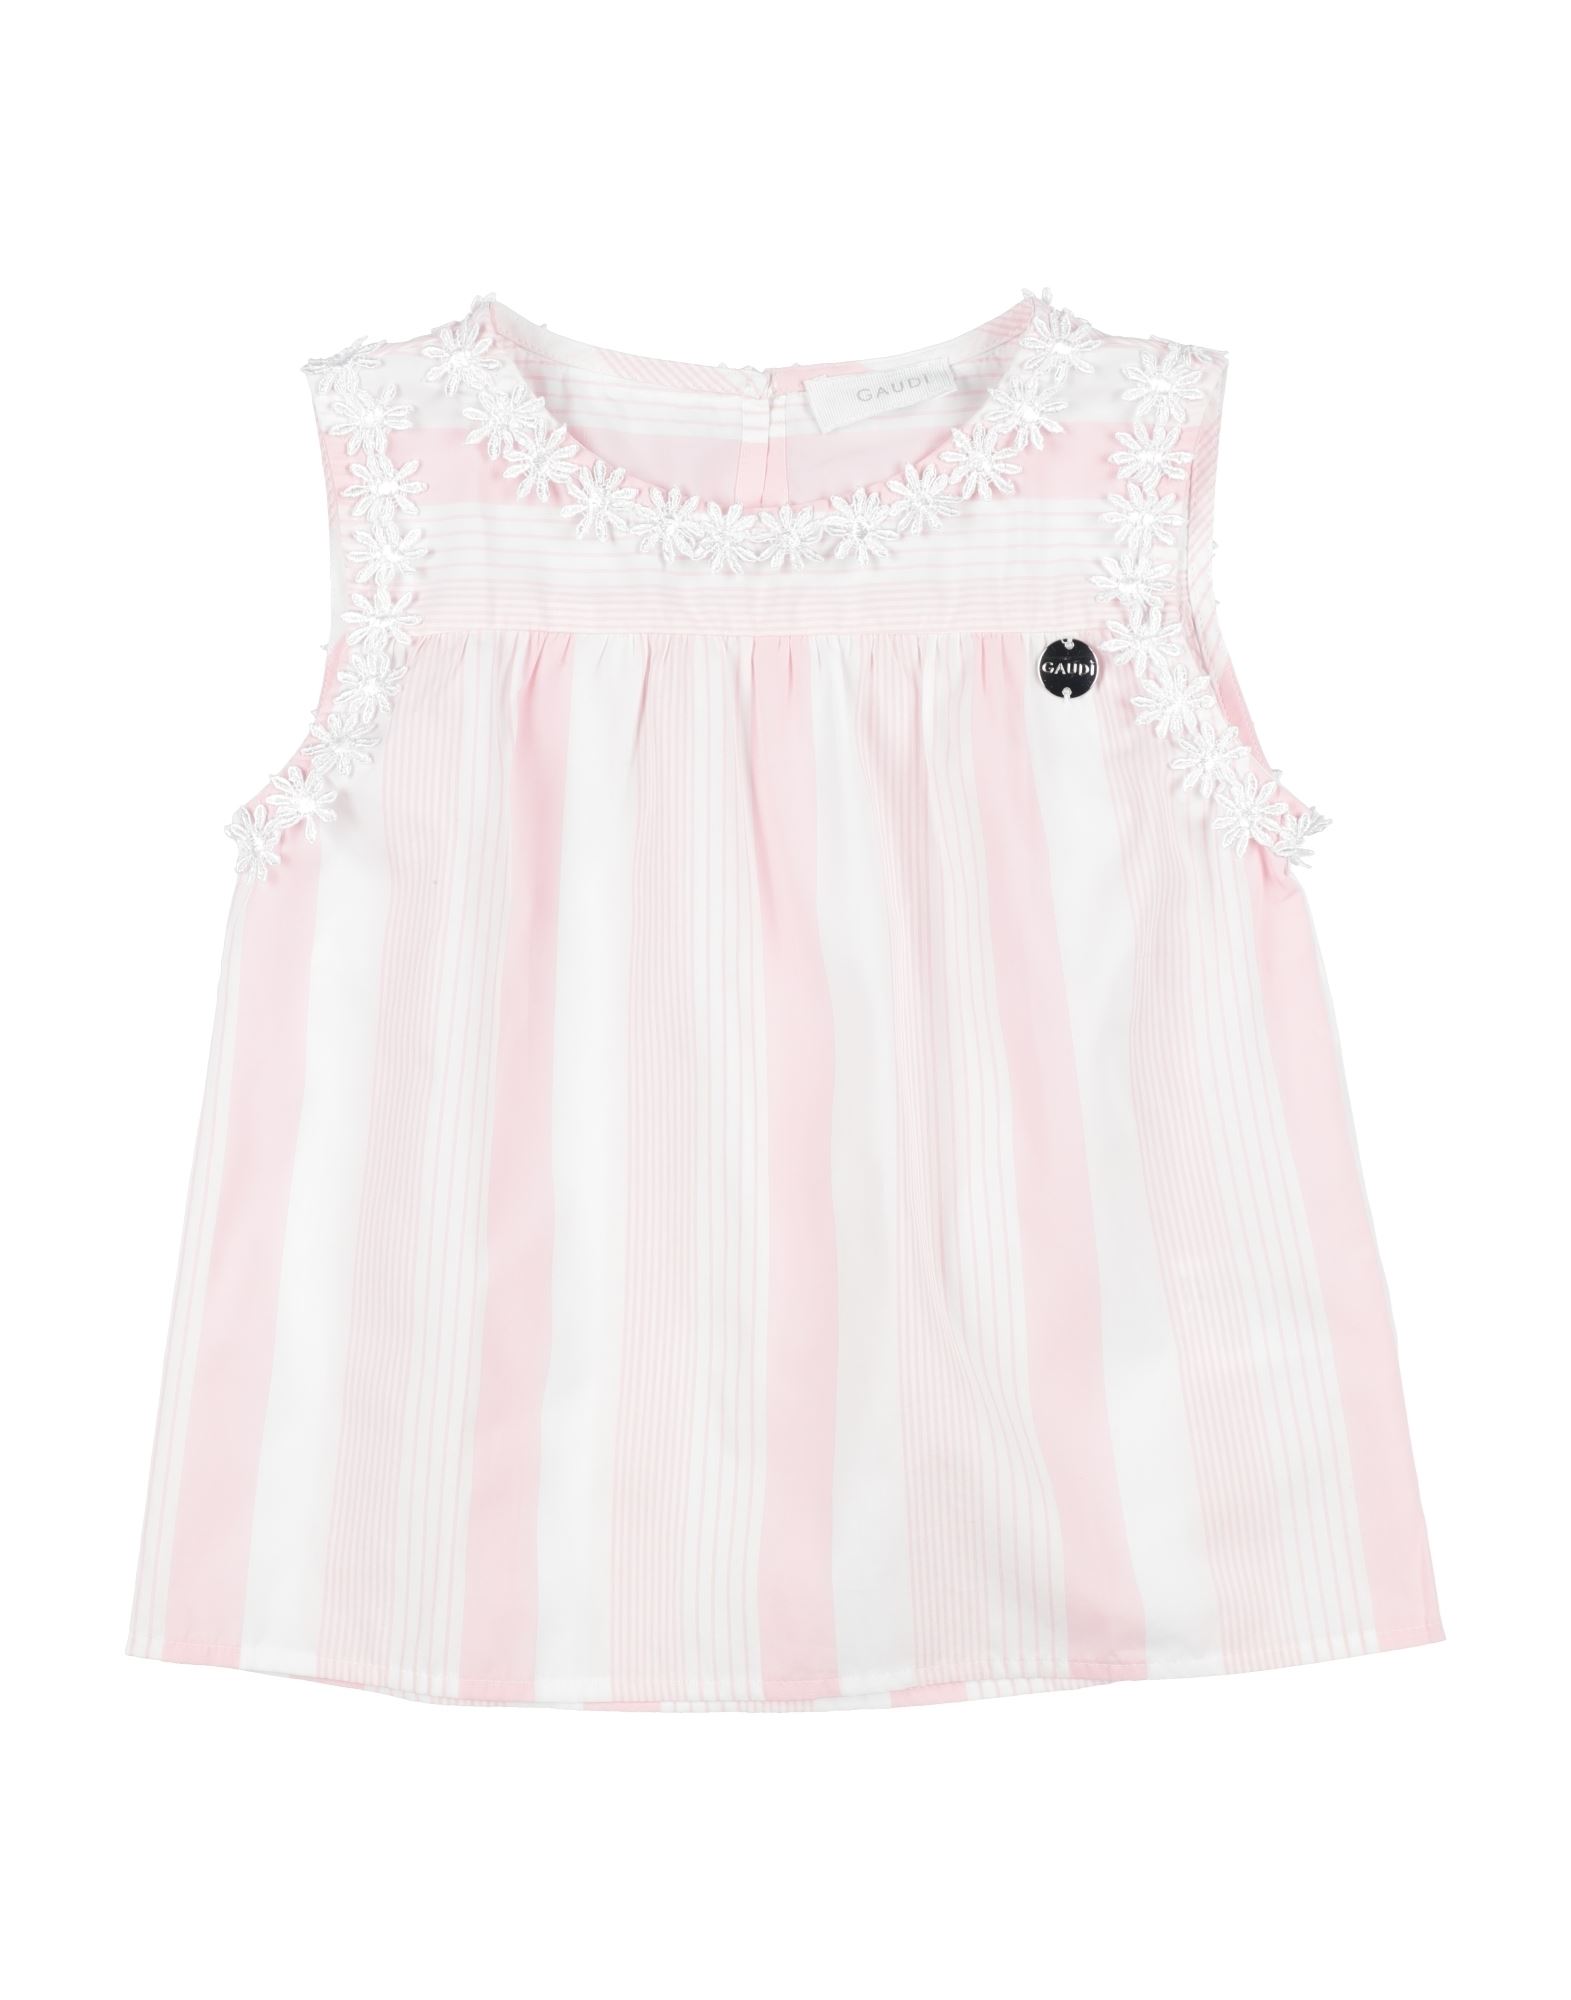 Gaudì Kids'  Toddler Girl Top Light Pink Size 6 Cotton